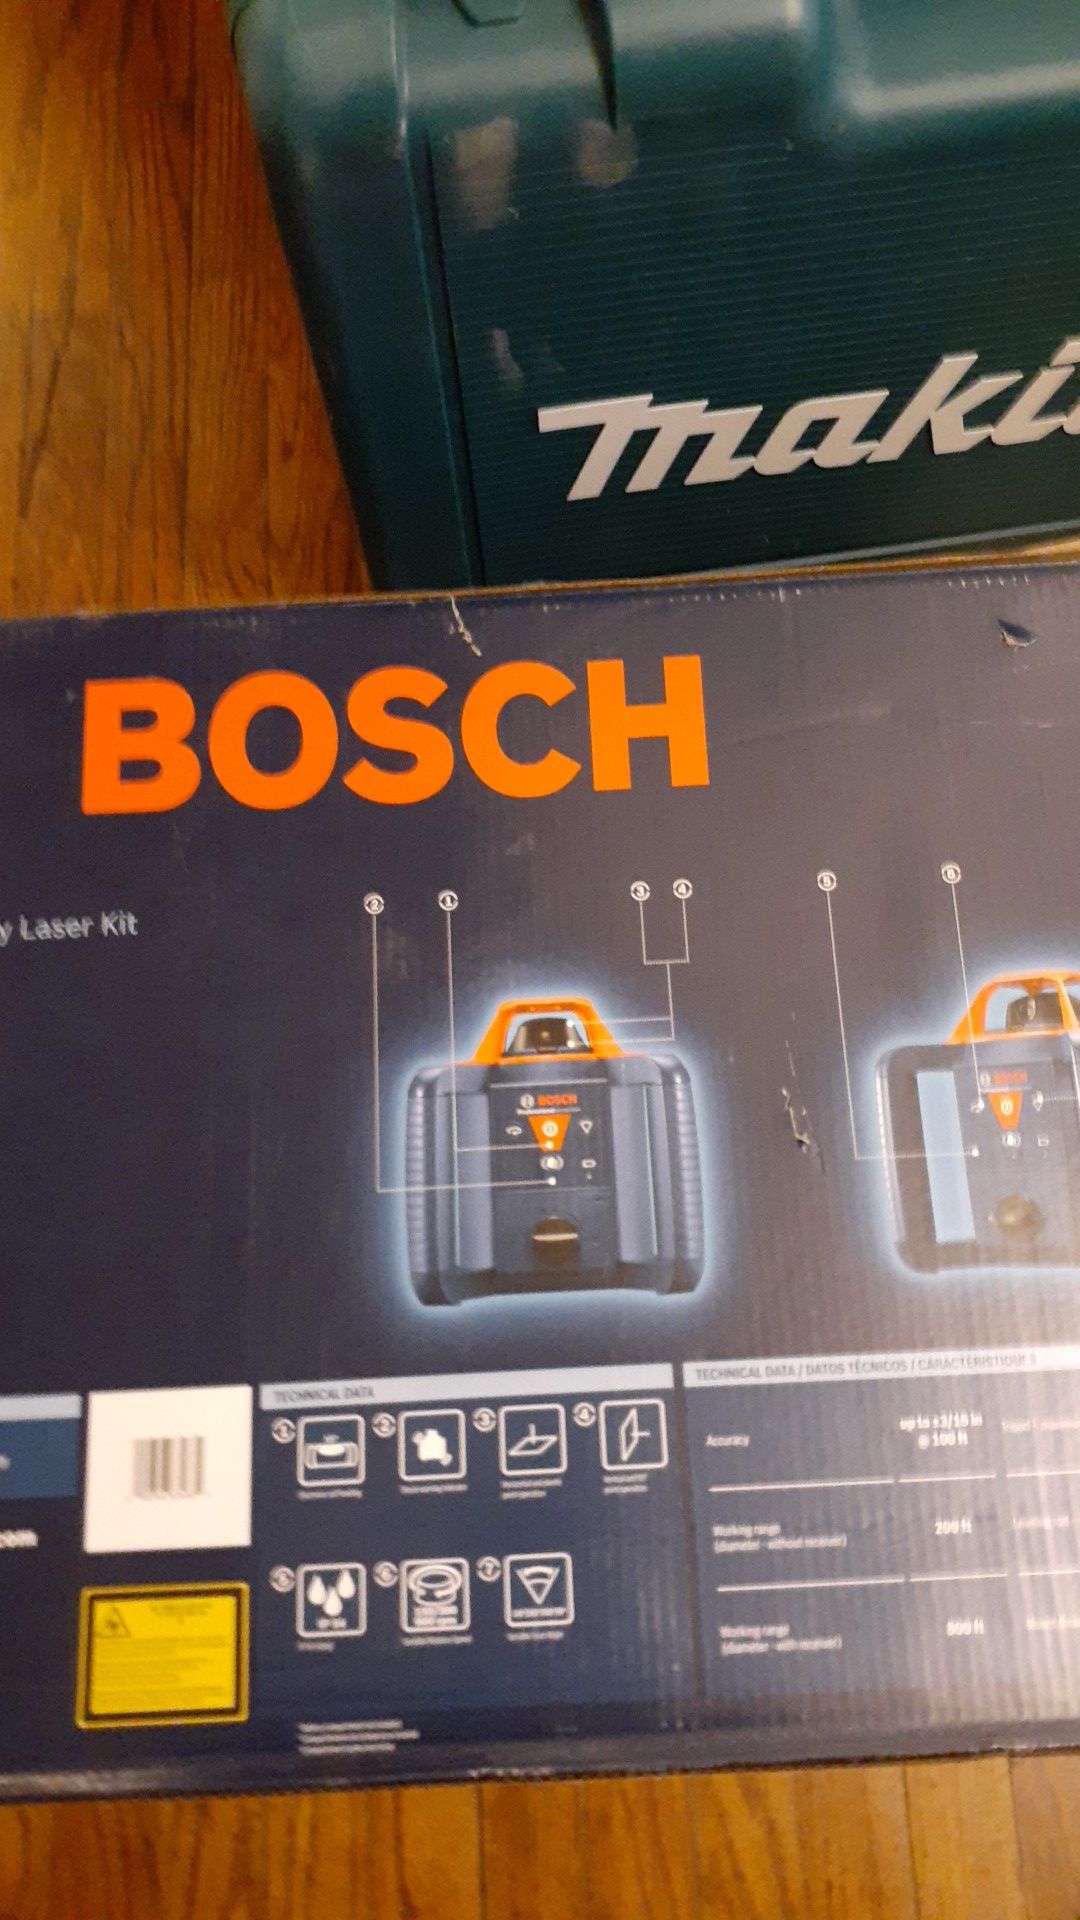 Bosch self leveling rotary laser kit GRL 800 20hvk